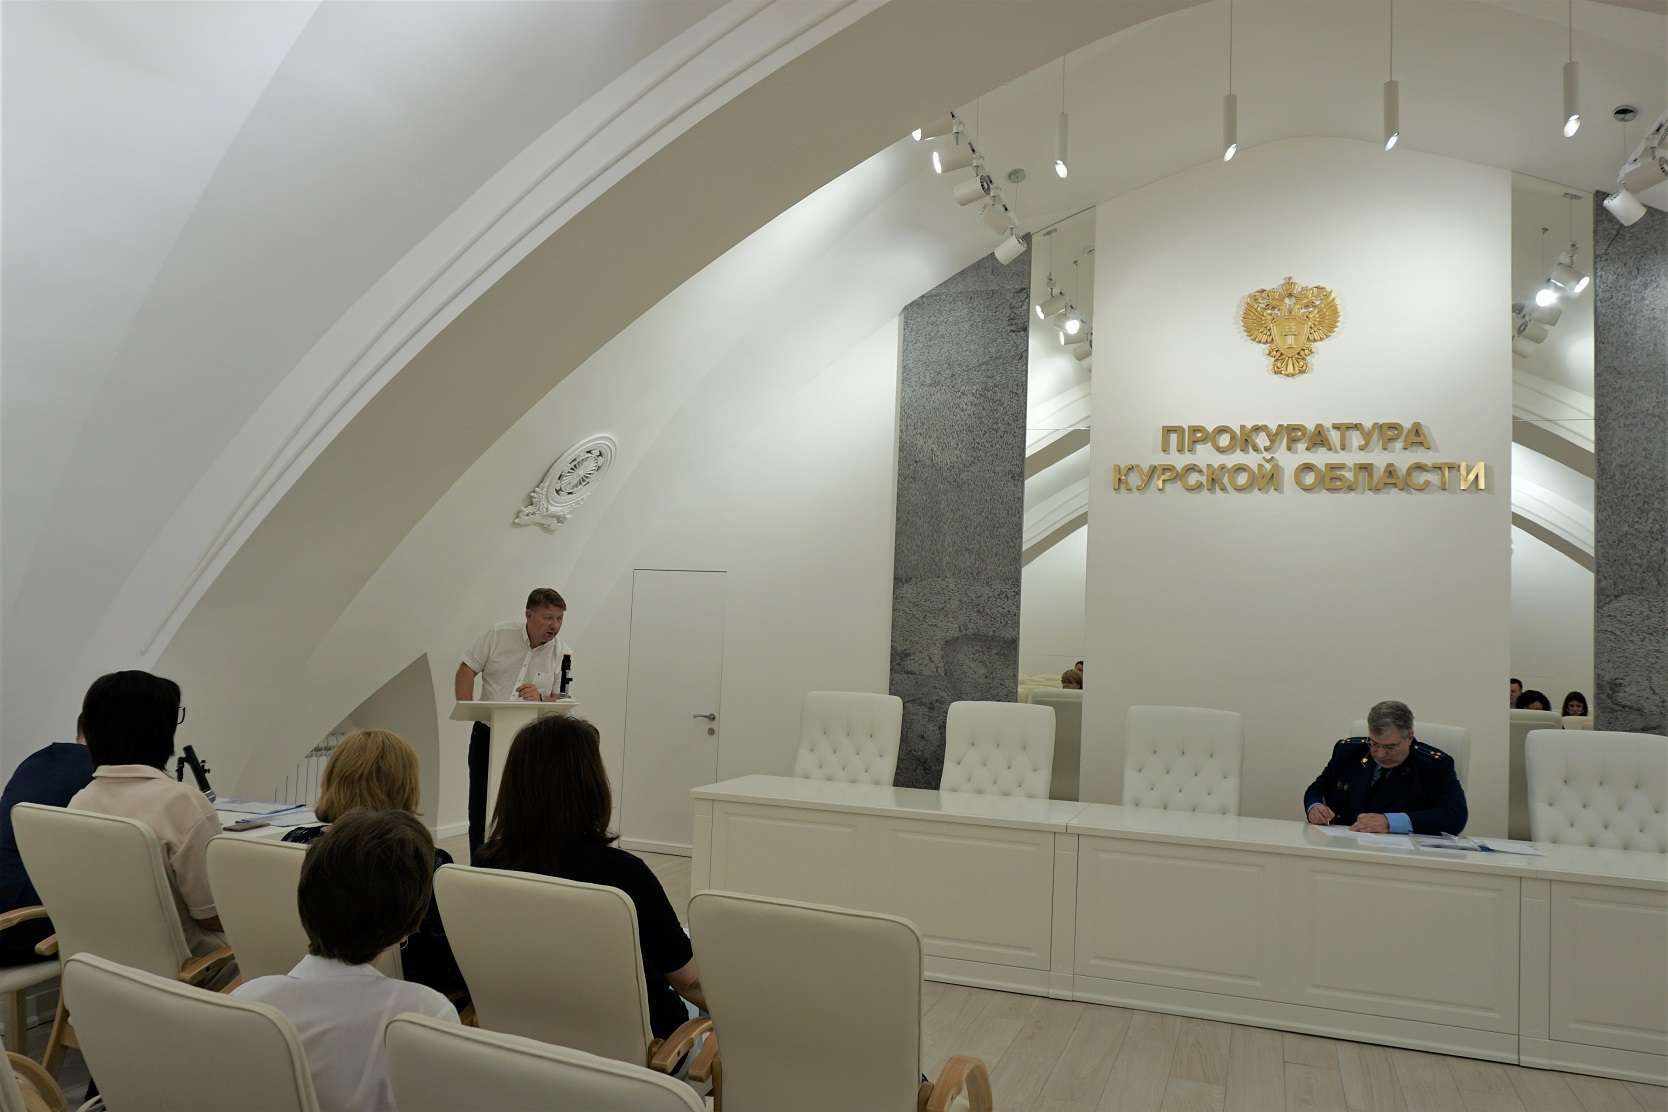 В прокуратуре Курской области обсудили осуществление контрольно-надзорной деятельности в условиях запрета на проведение проверок и меры поддержки бизнеса